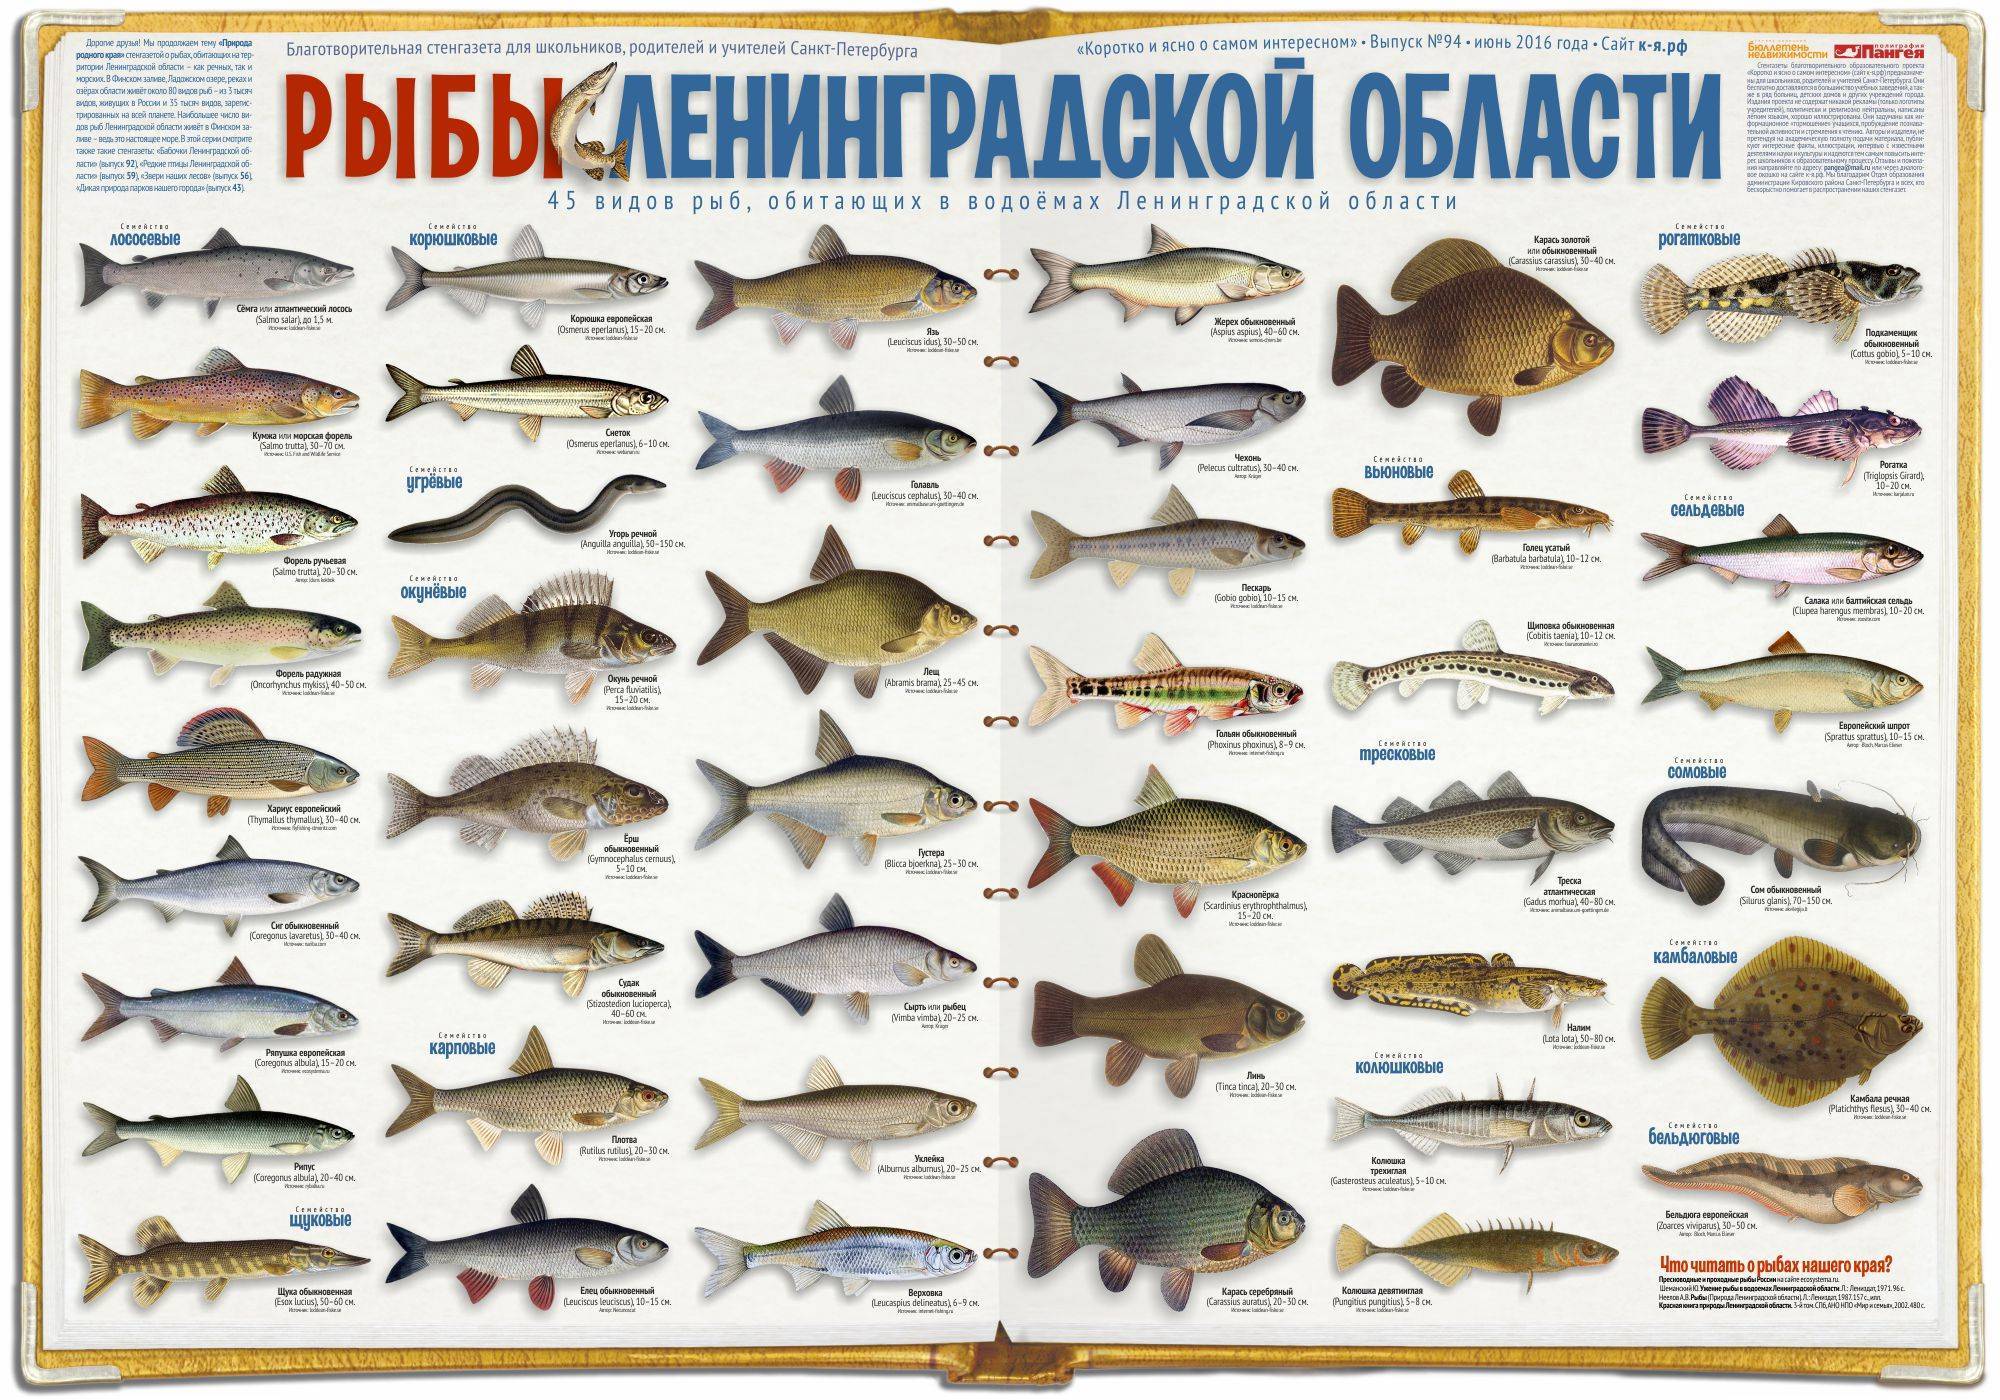 Описание редких морских и пресноводных рыб